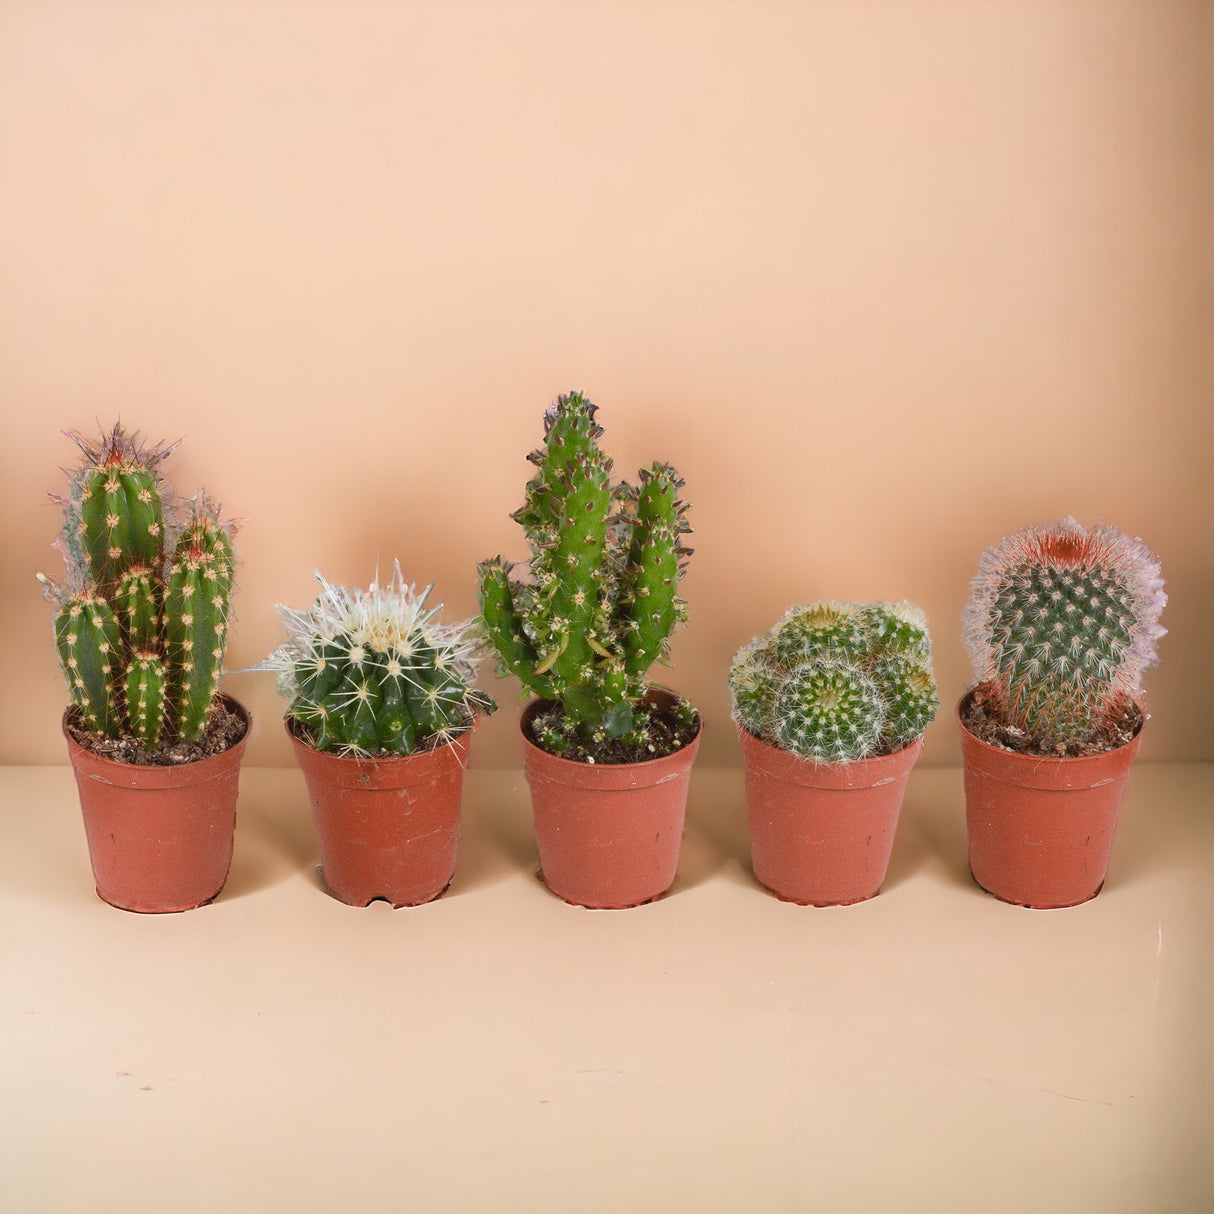 Caja de cactus, suculentas - Juego de 15 plantas, h13cm